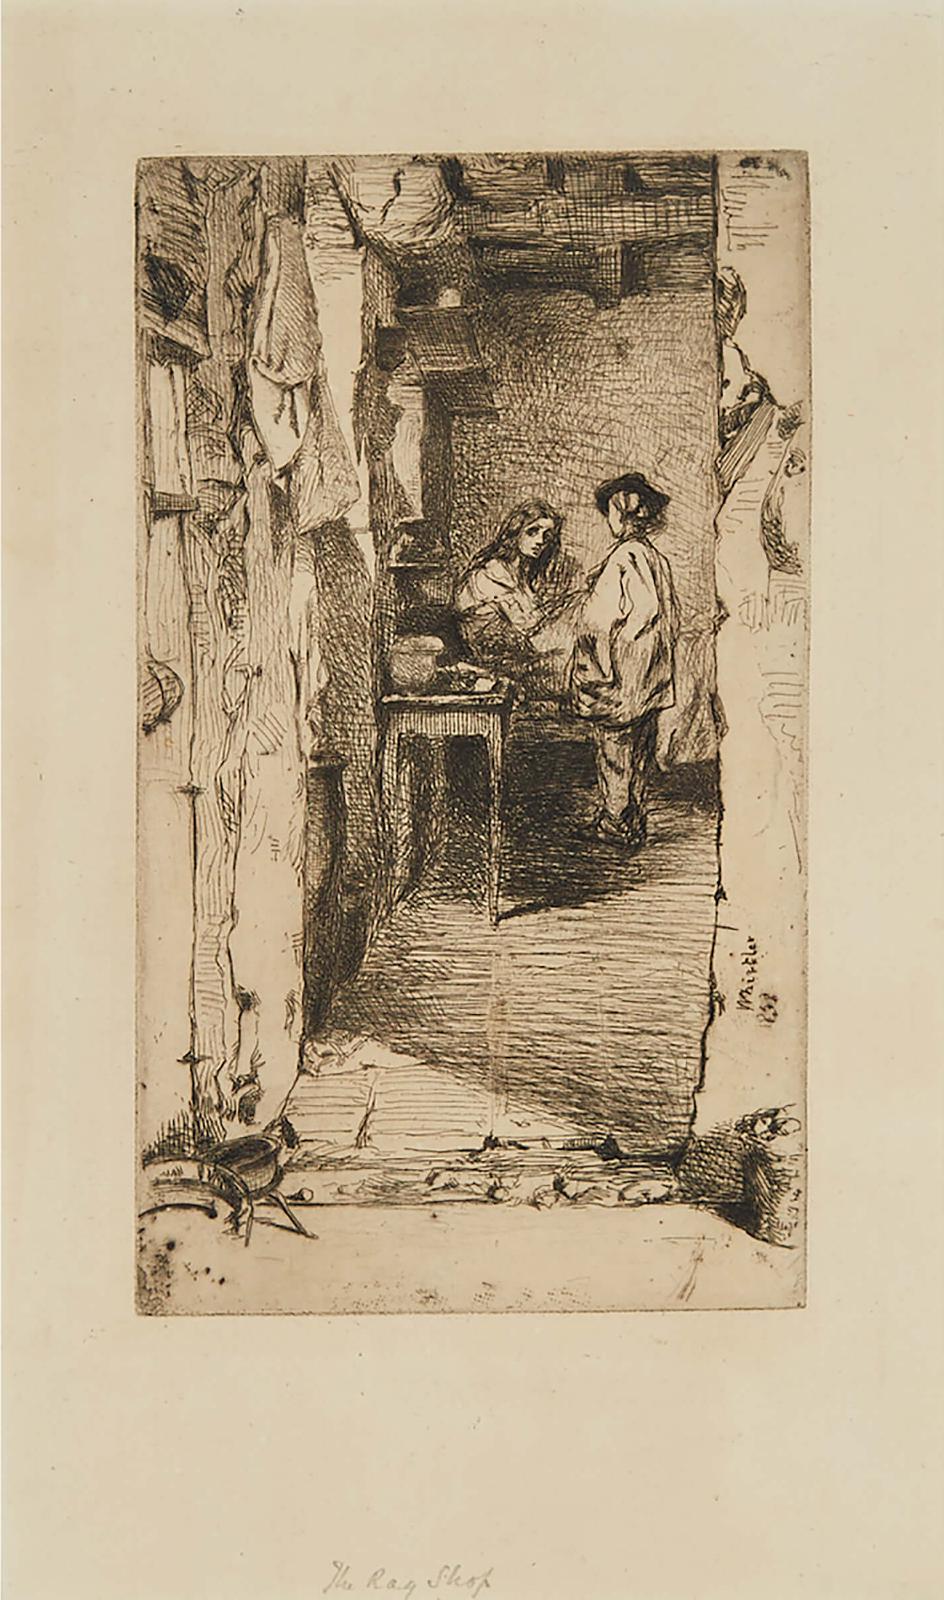 James Abbott McNeill Whistler (1834-1903) - The Rag Gatherers, 1858 [kennedy, 23v]